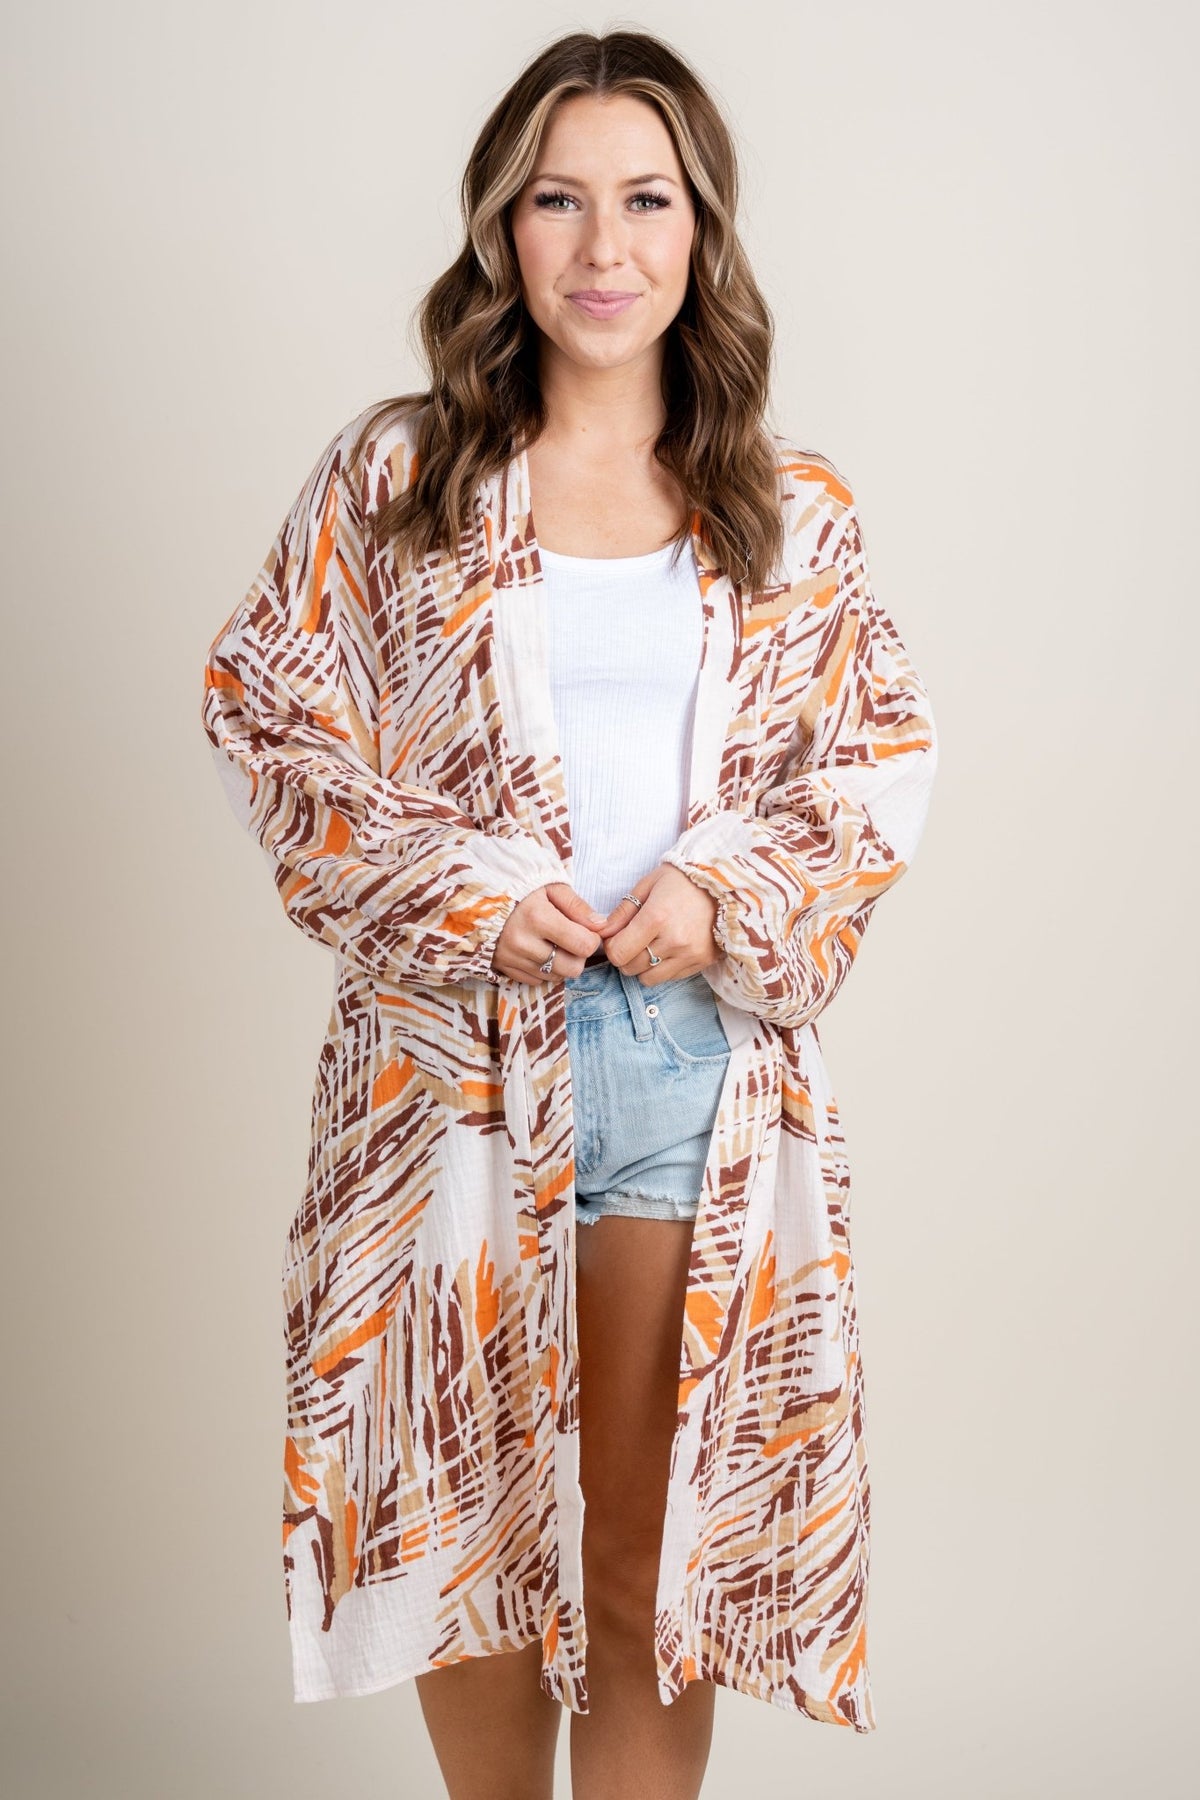 Printed long sleeve kimono orange/brown - Cute Kimonos - Trendy Cardigans & Stylish Kimonos at Lush Fashion Lounge Boutique in Oklahoma City